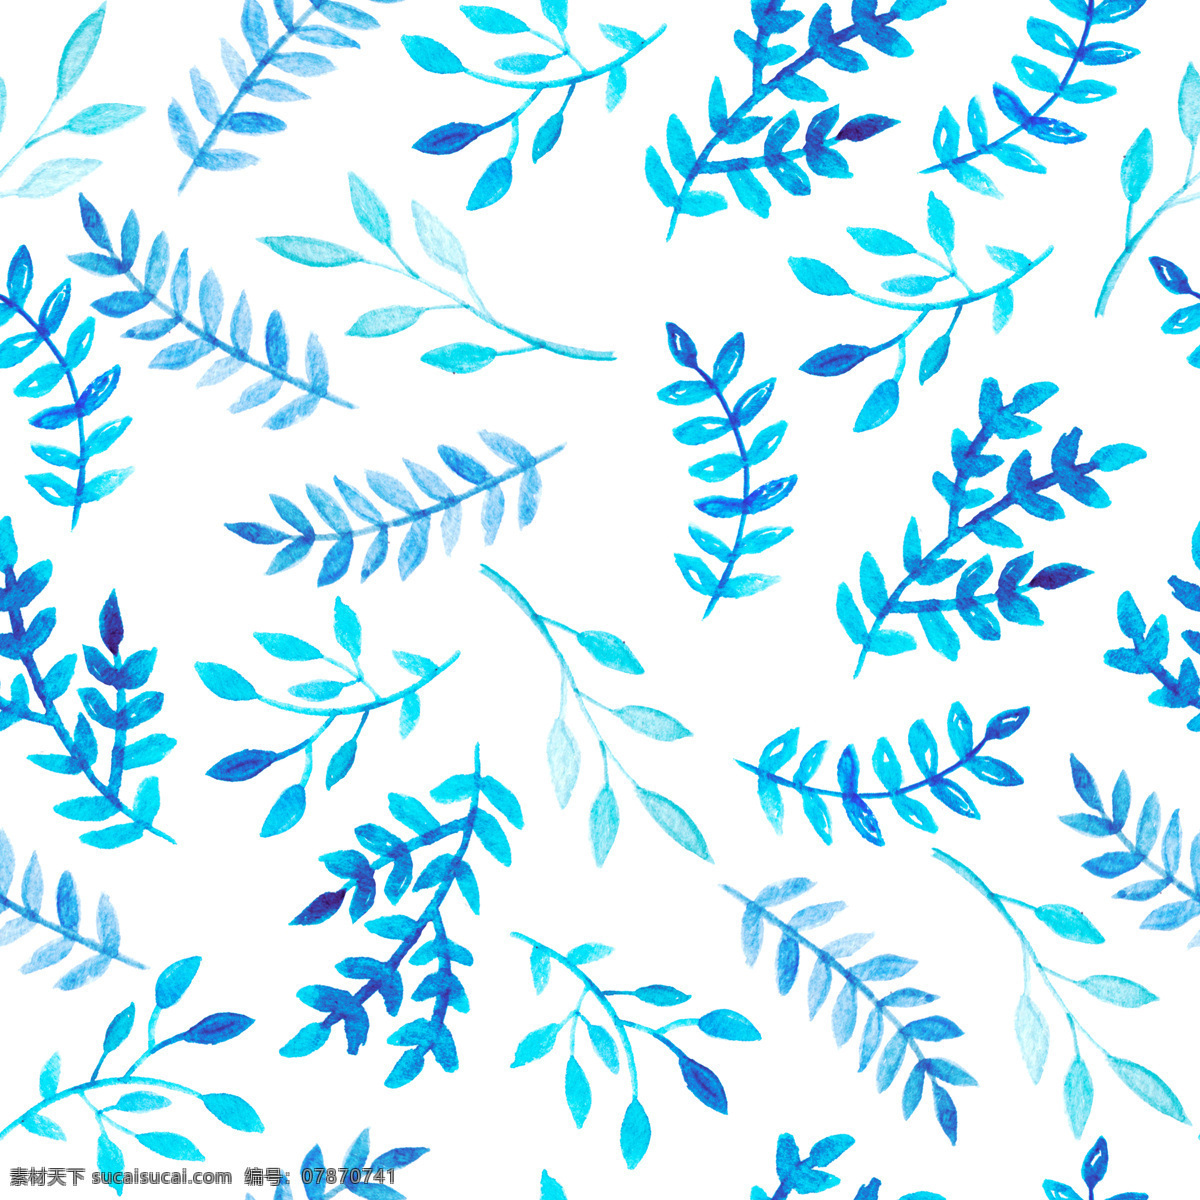 简约 手绘 白色 树叶 背景 蓝色 植物 小叶 蕨类植物 背景素材 填充背景